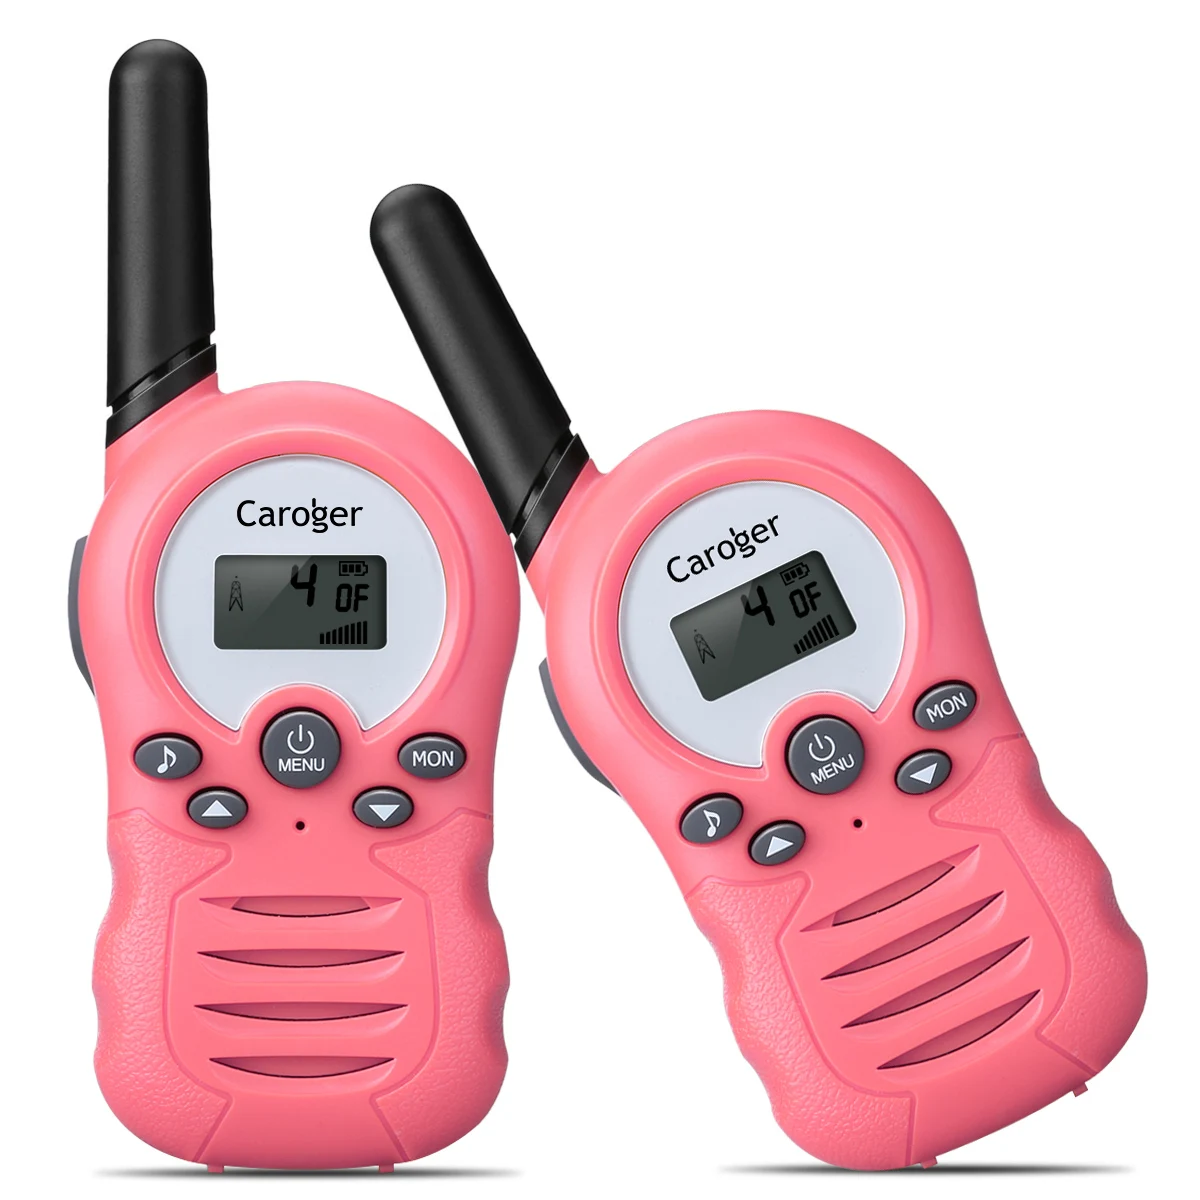 США Plug из 2 предметов Caroger CR388A лицензий 8 канал Walkie Talkie PMR446MHZ двухстороннее радио до 3300 метров/2 км переговорные - Цвет: Light Pink